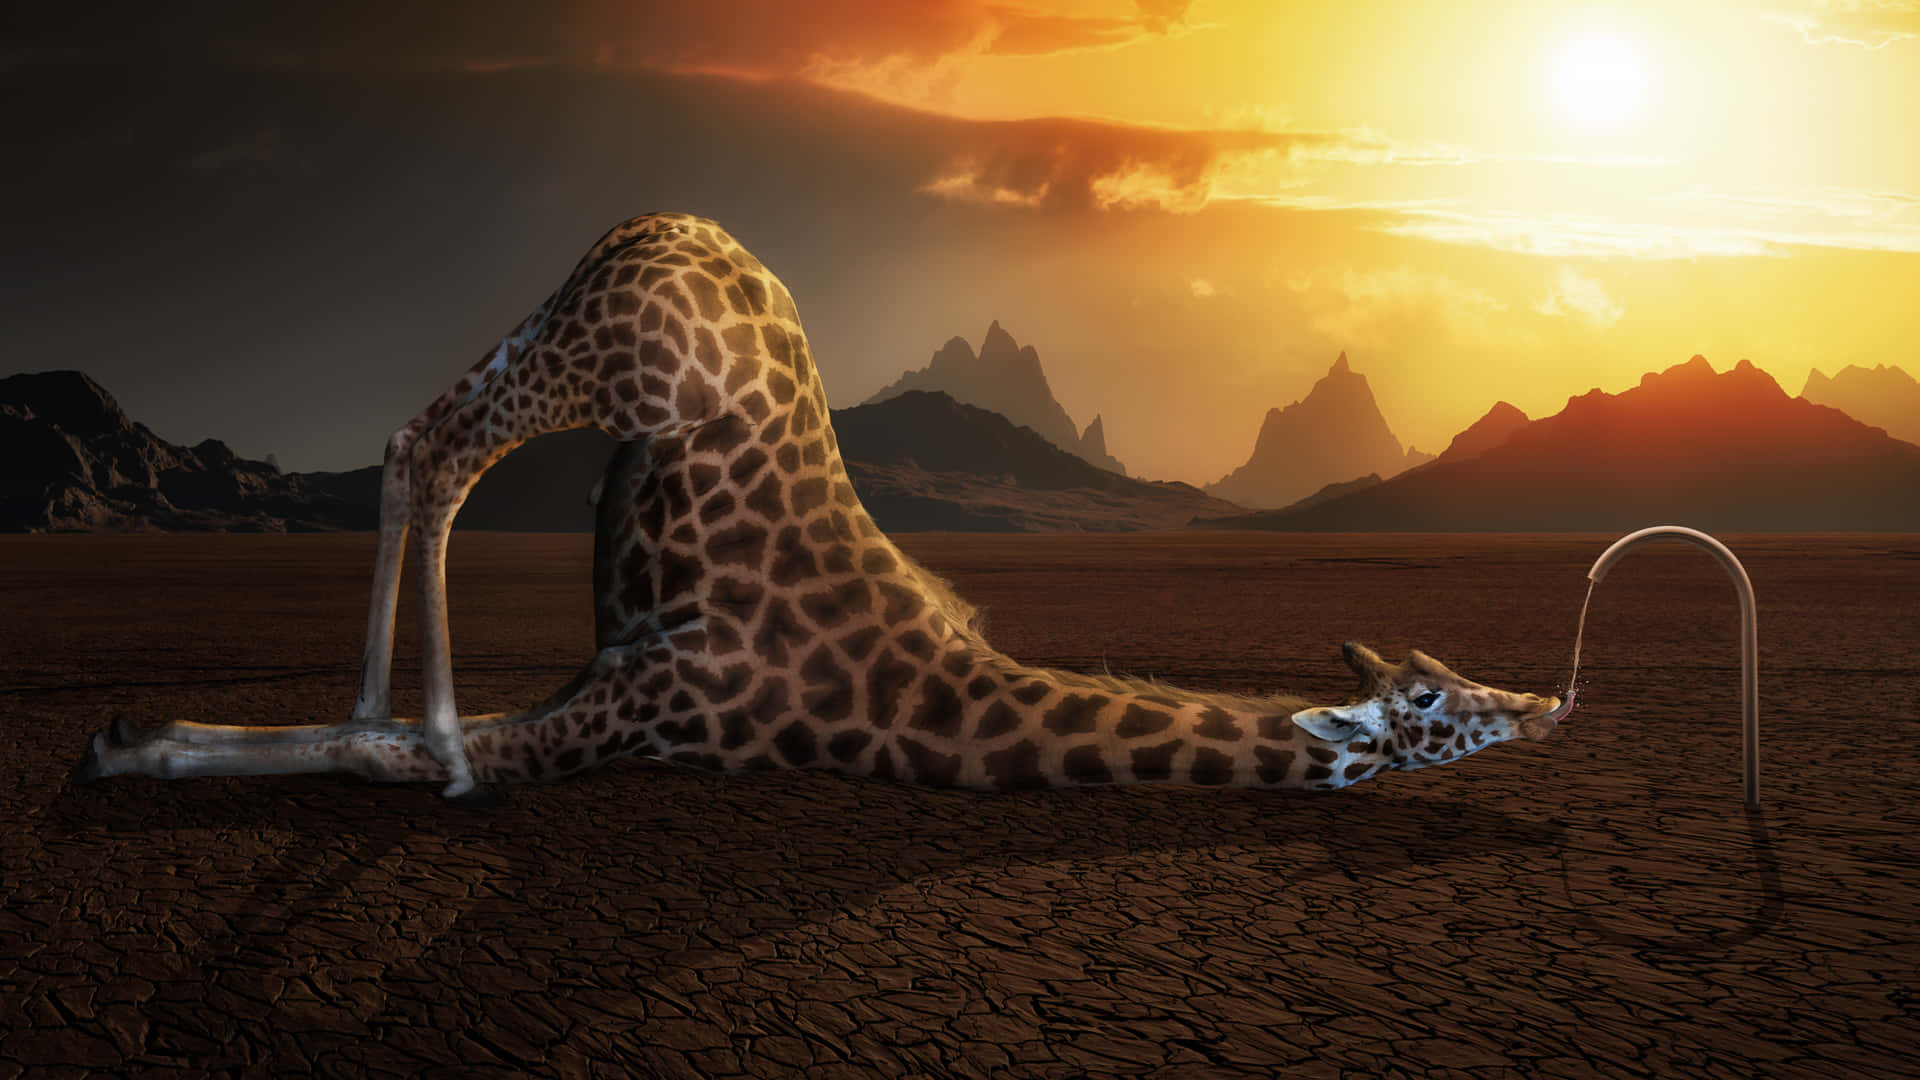 Weird Giraffe Drinking Water From Faucet In Desert Picture